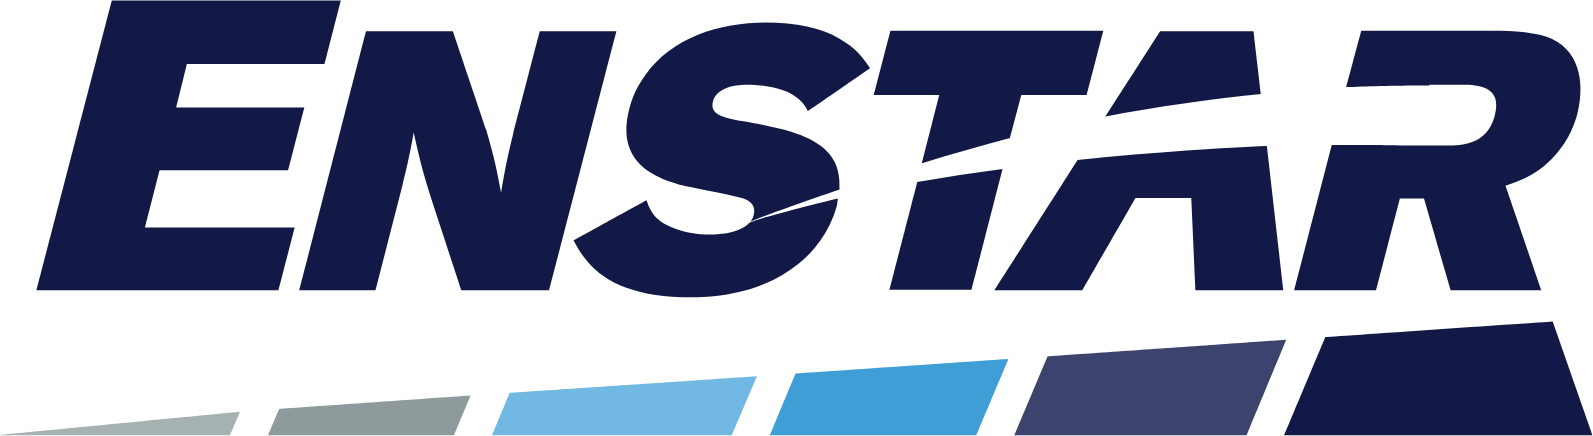 Enstar Group logo large (transparent PNG)